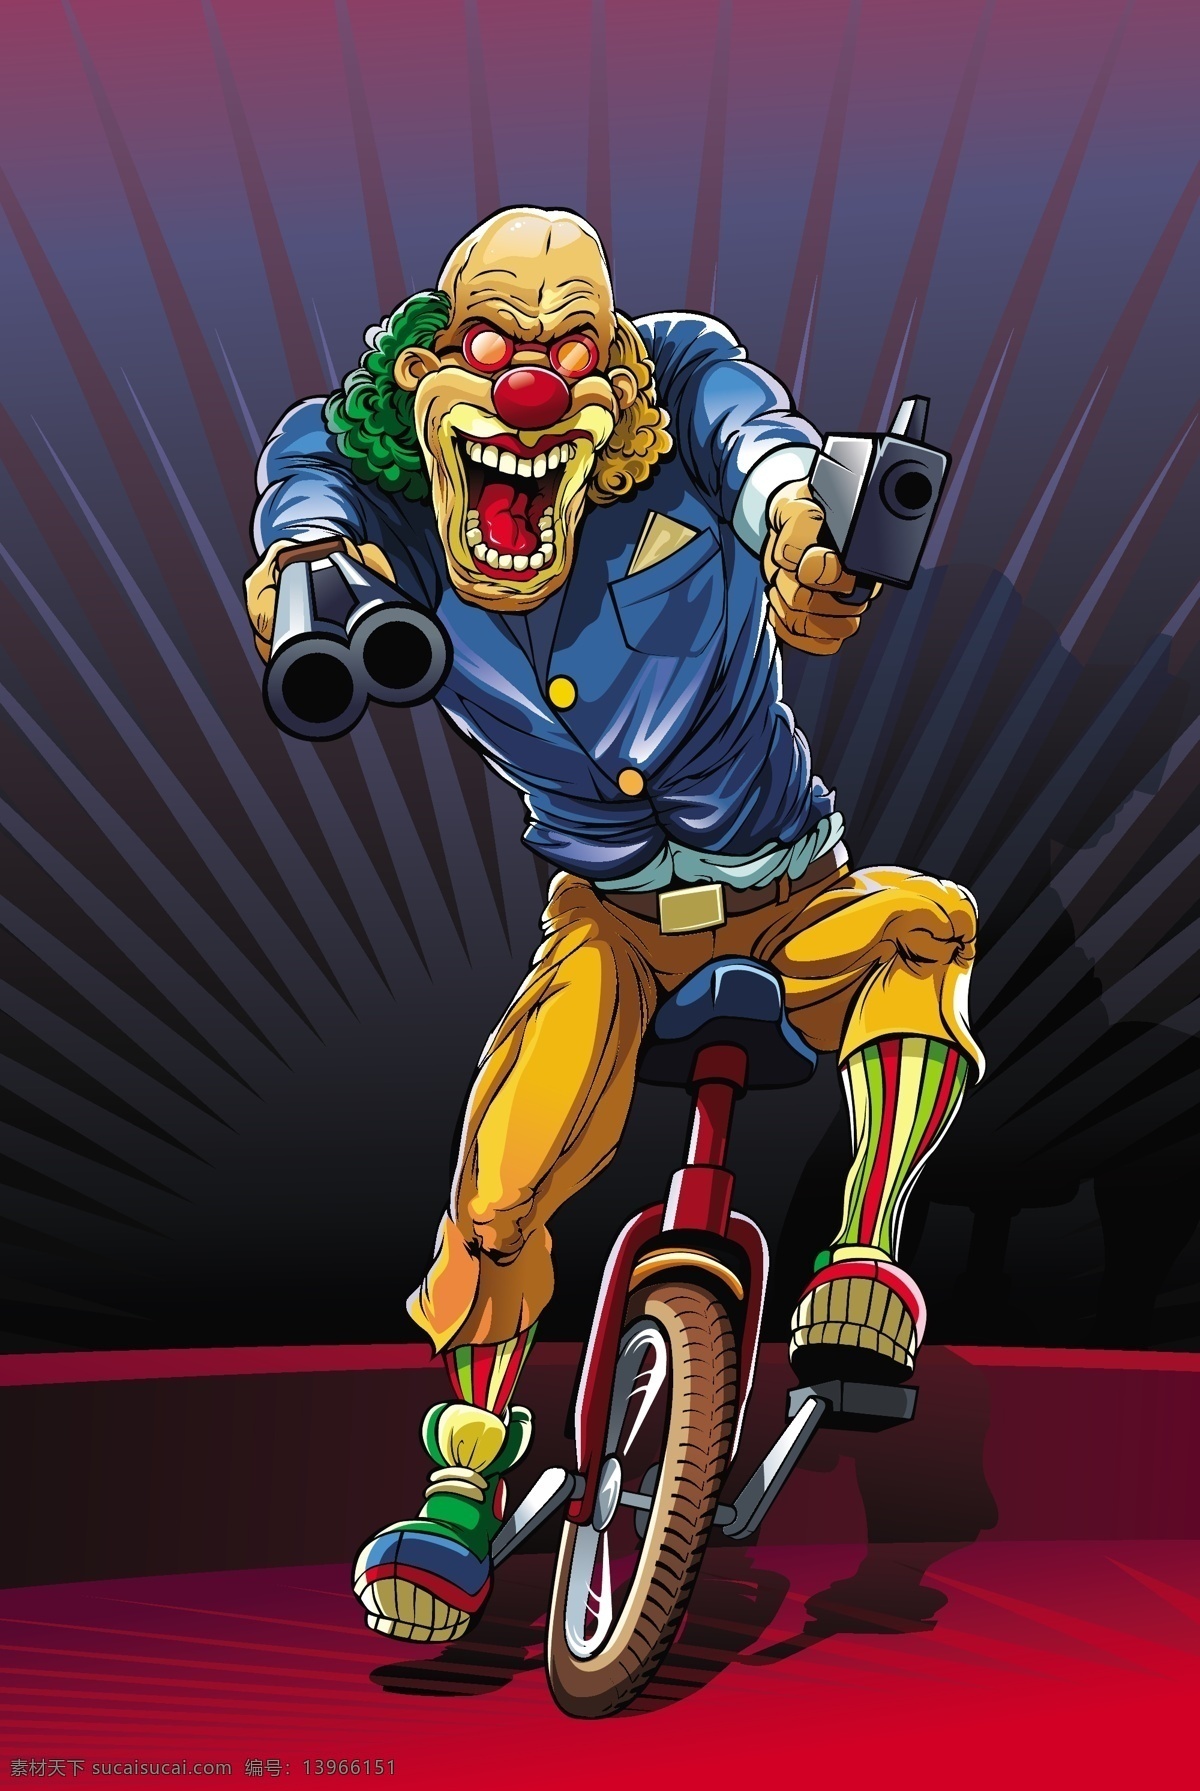 骑 独轮车 疯狂 小丑 愚人节 疯狂小丑 枪 放射线 插画 卡通漫画 黑色